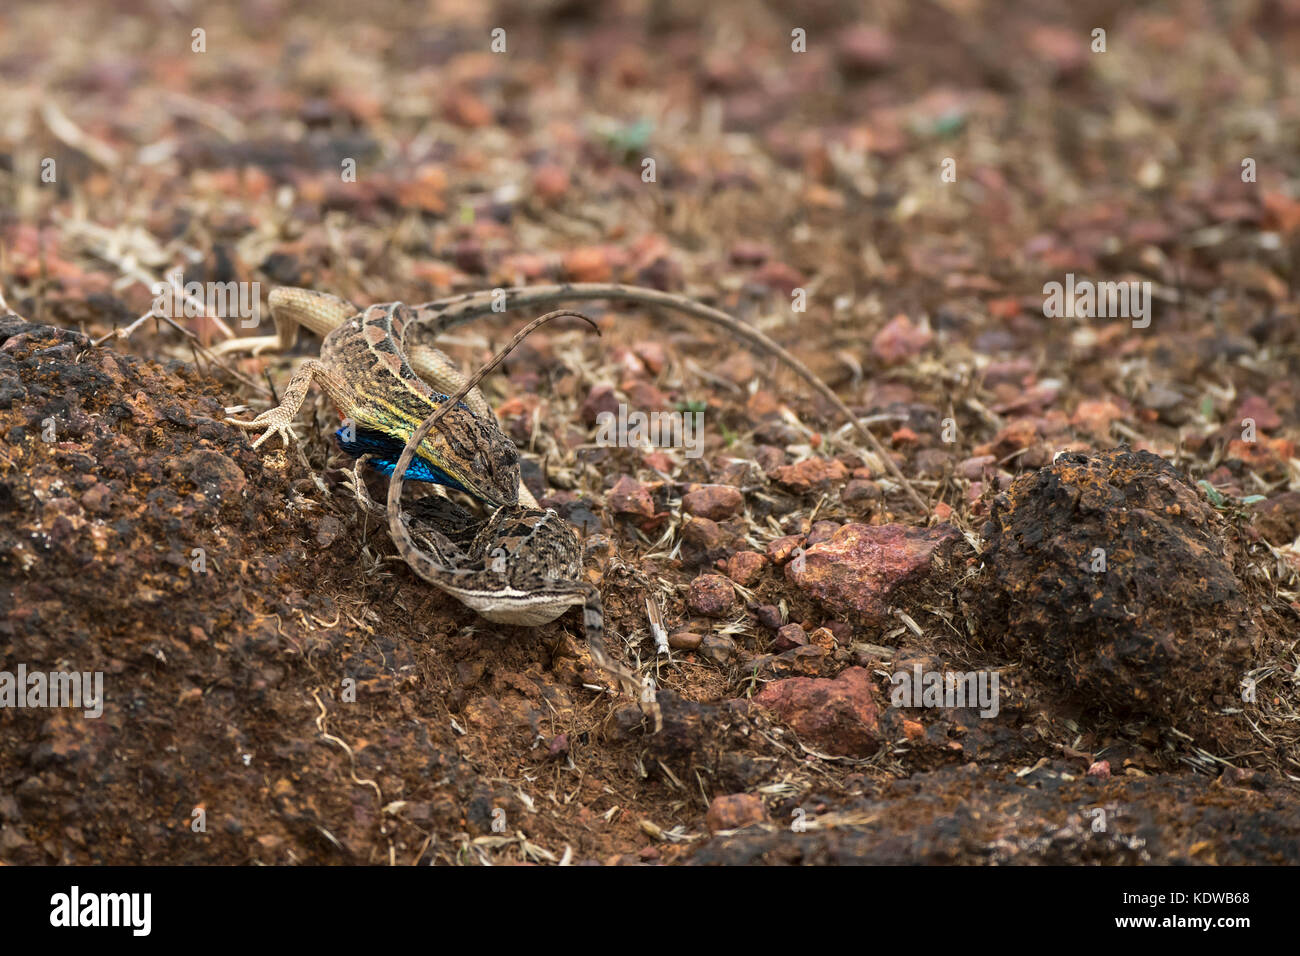 L'immagine della ventola throated Lizard ( Sitana ponticeriana) il comportamento di accoppiamento è stata presa in Satara, Maharashtra, India Foto Stock